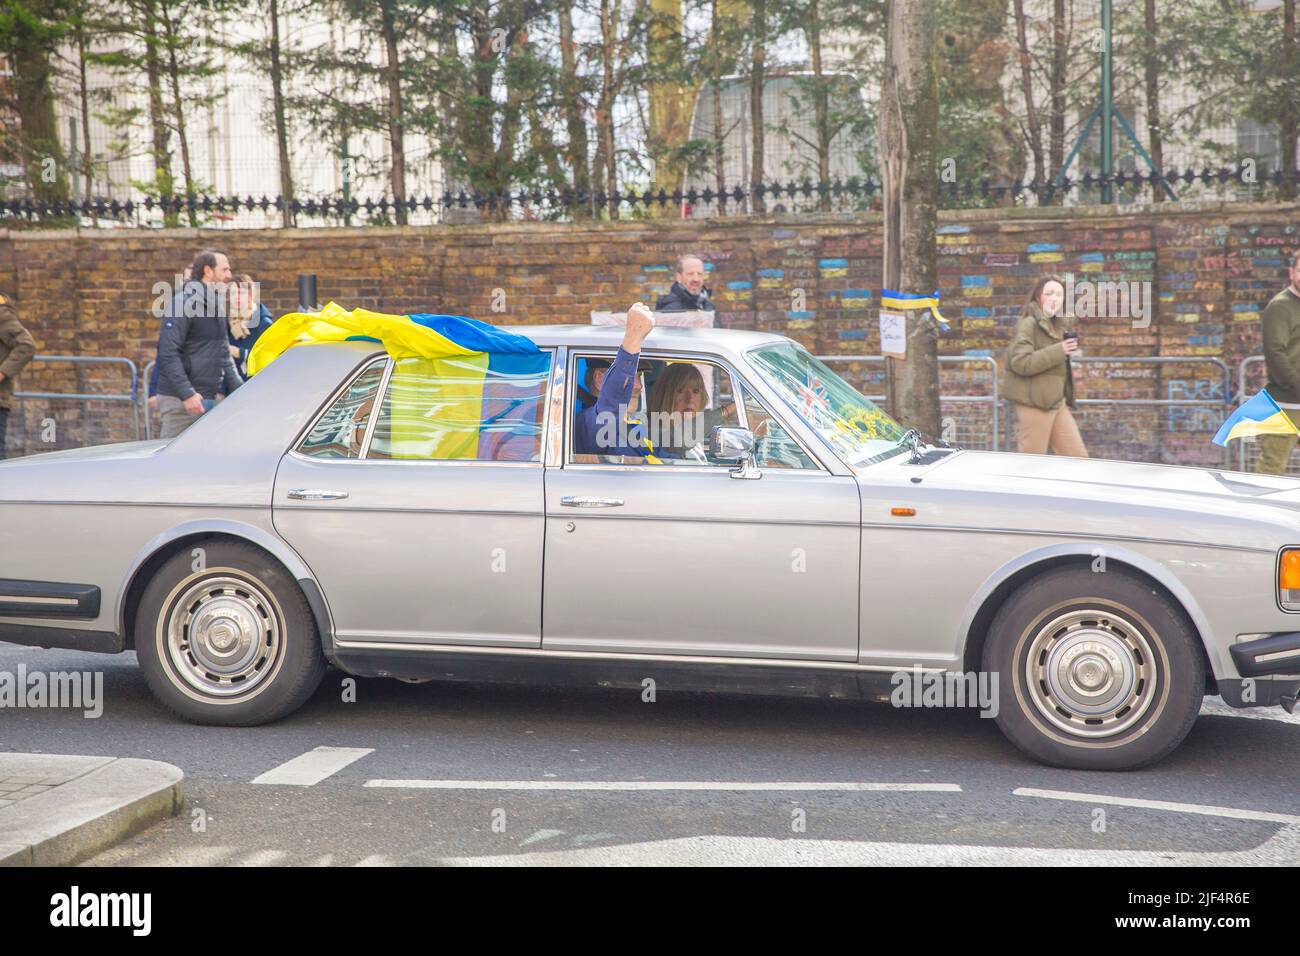 Un automobiliste affichant des drapeaux ukrainiens sur la voiture passe devant l'ambassade de Russie à Londres. Banque D'Images